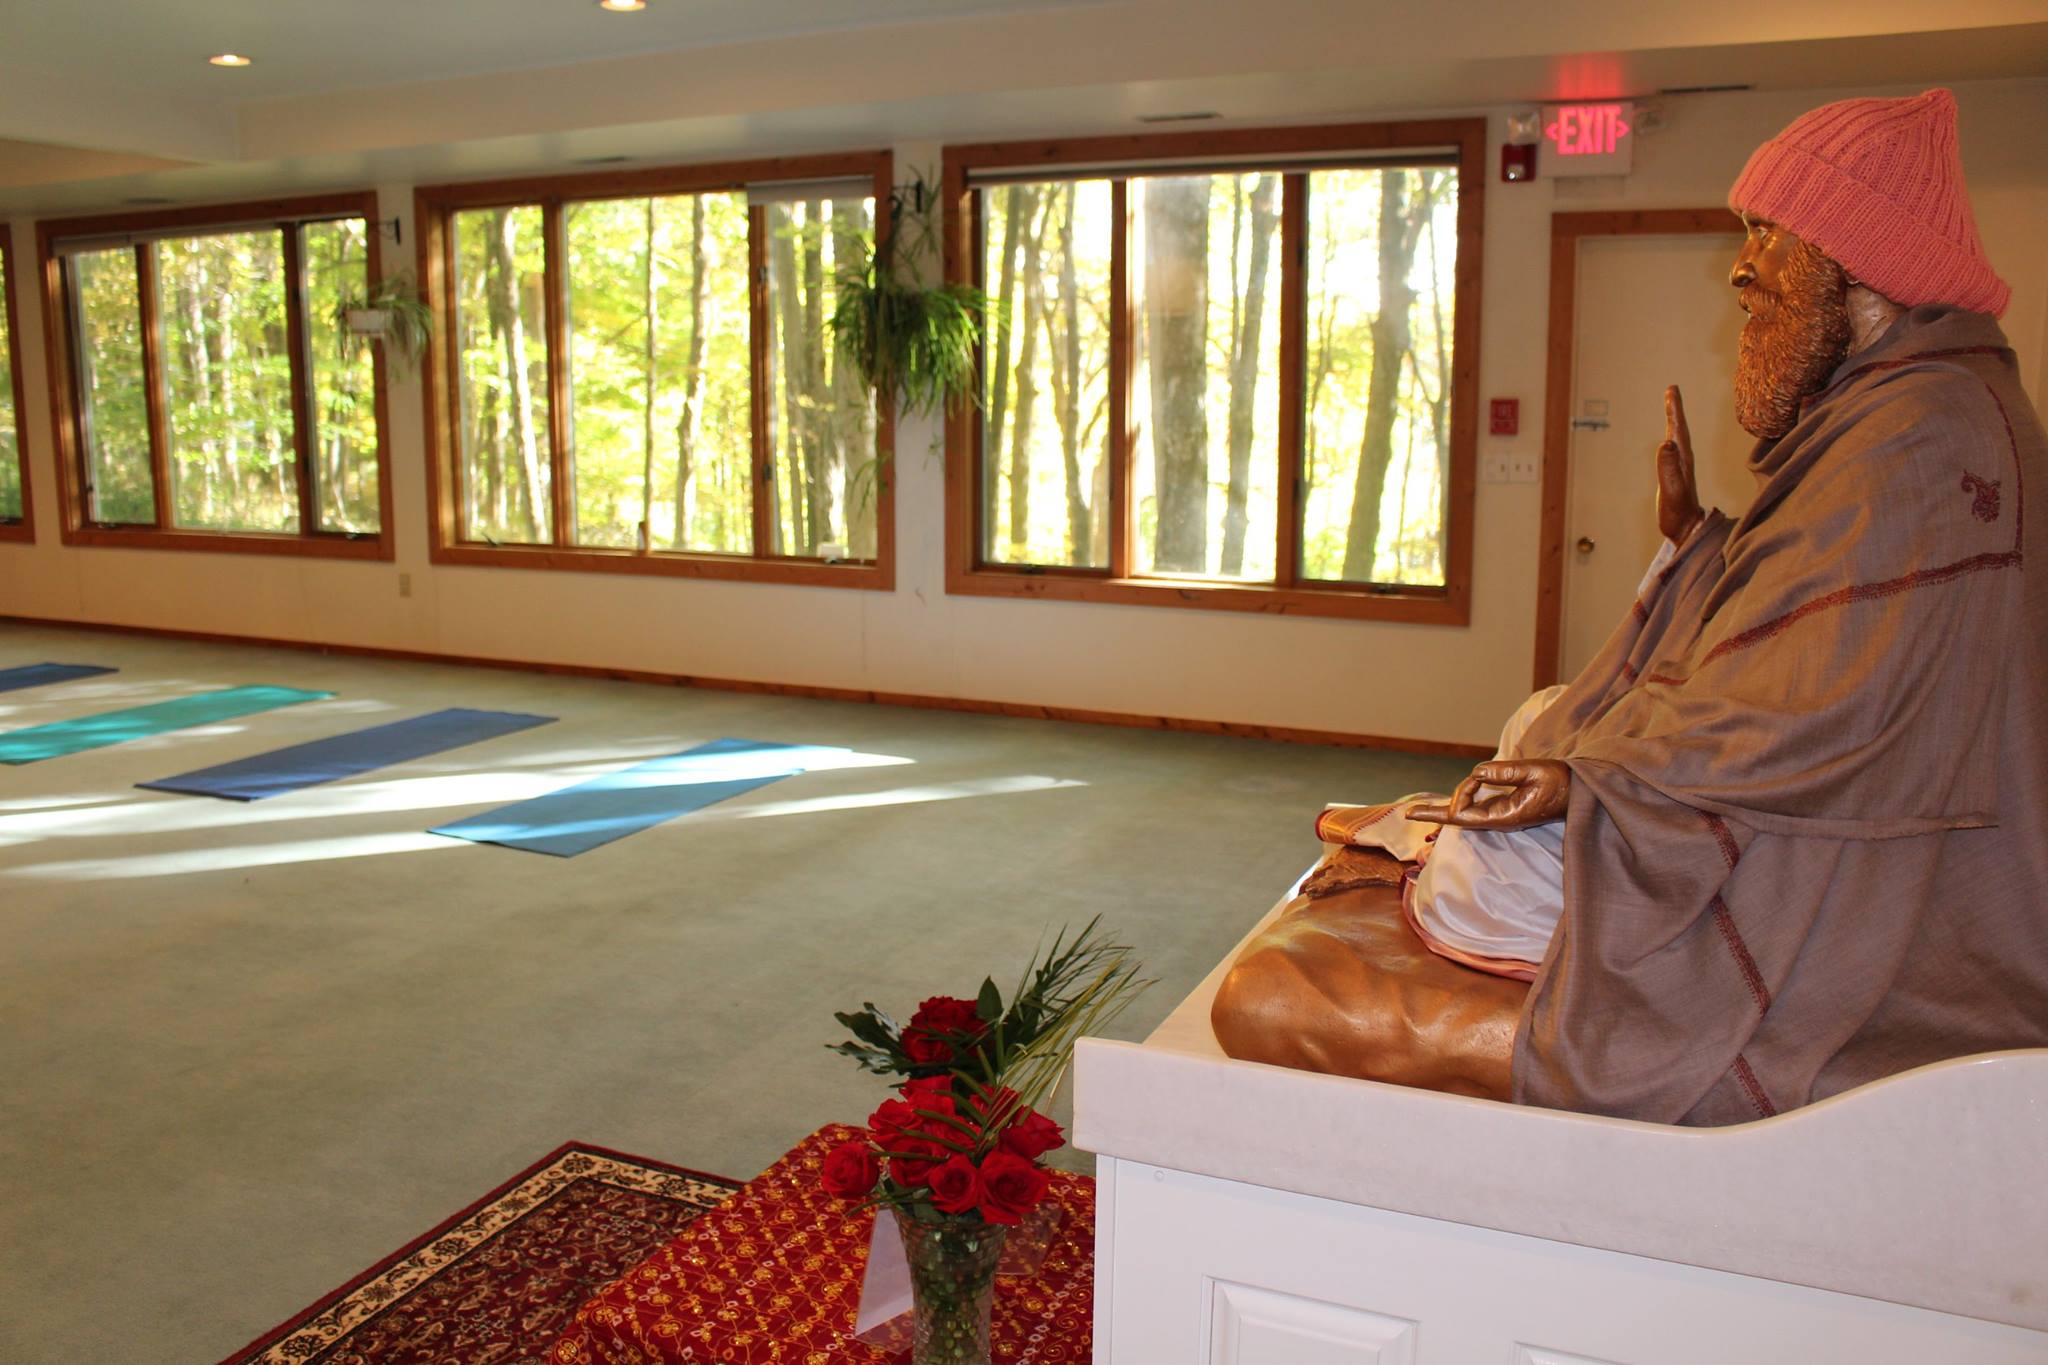 Woodbury Yoga Meditation Center Image